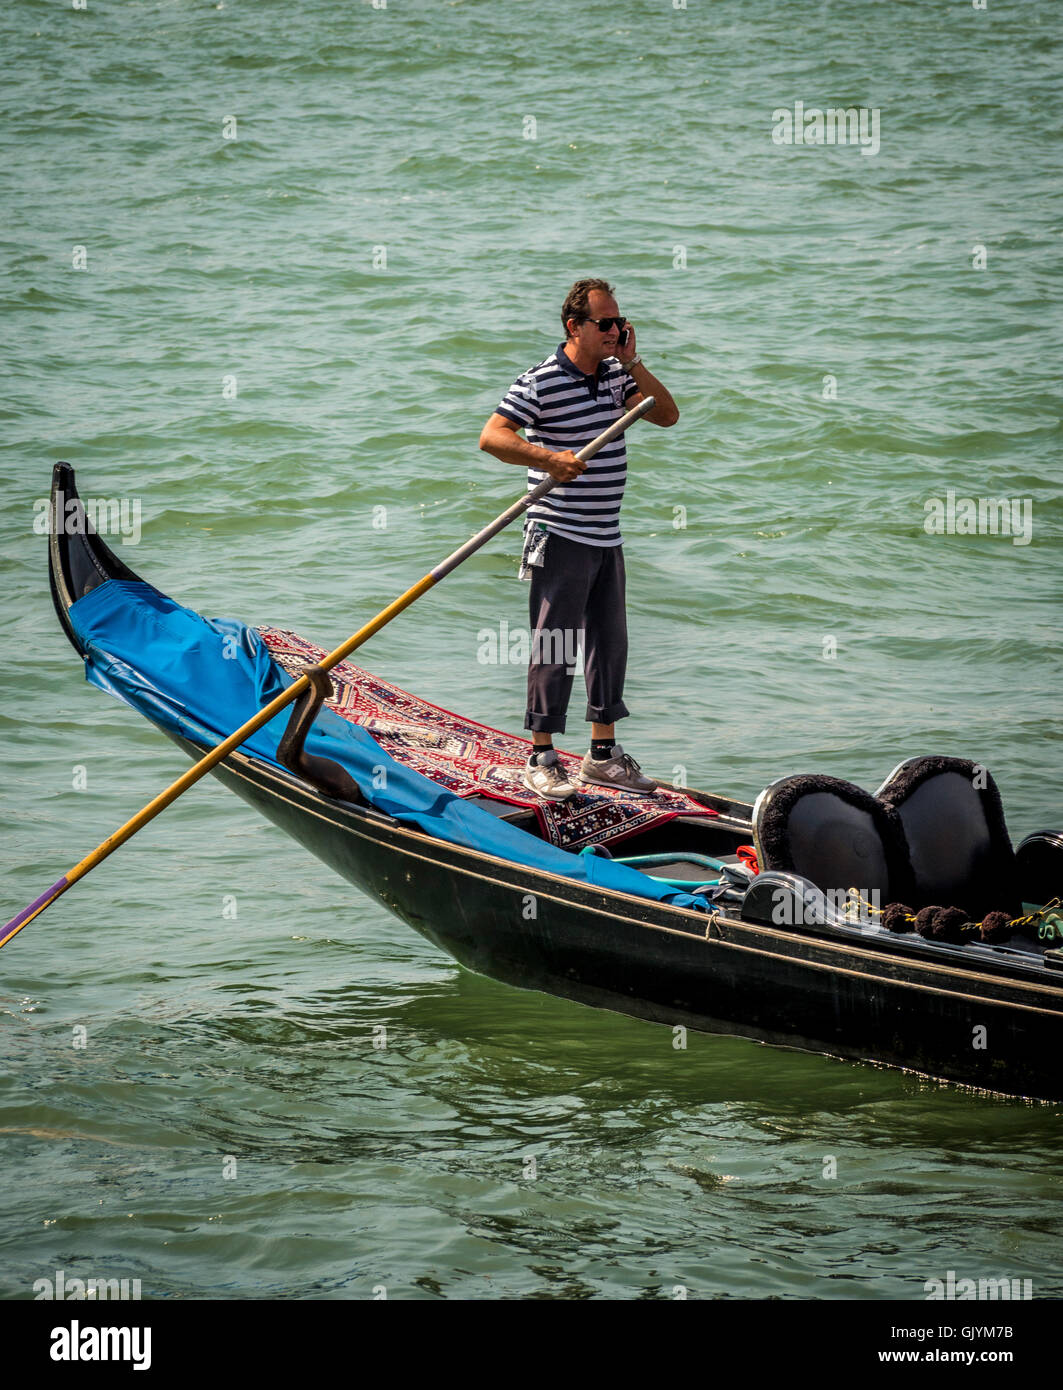 Gondolero vistiendo tradicionales de dirección superior seccionado su góndola mientras habla por su teléfono móvil. Venecia, Italia. Foto de stock